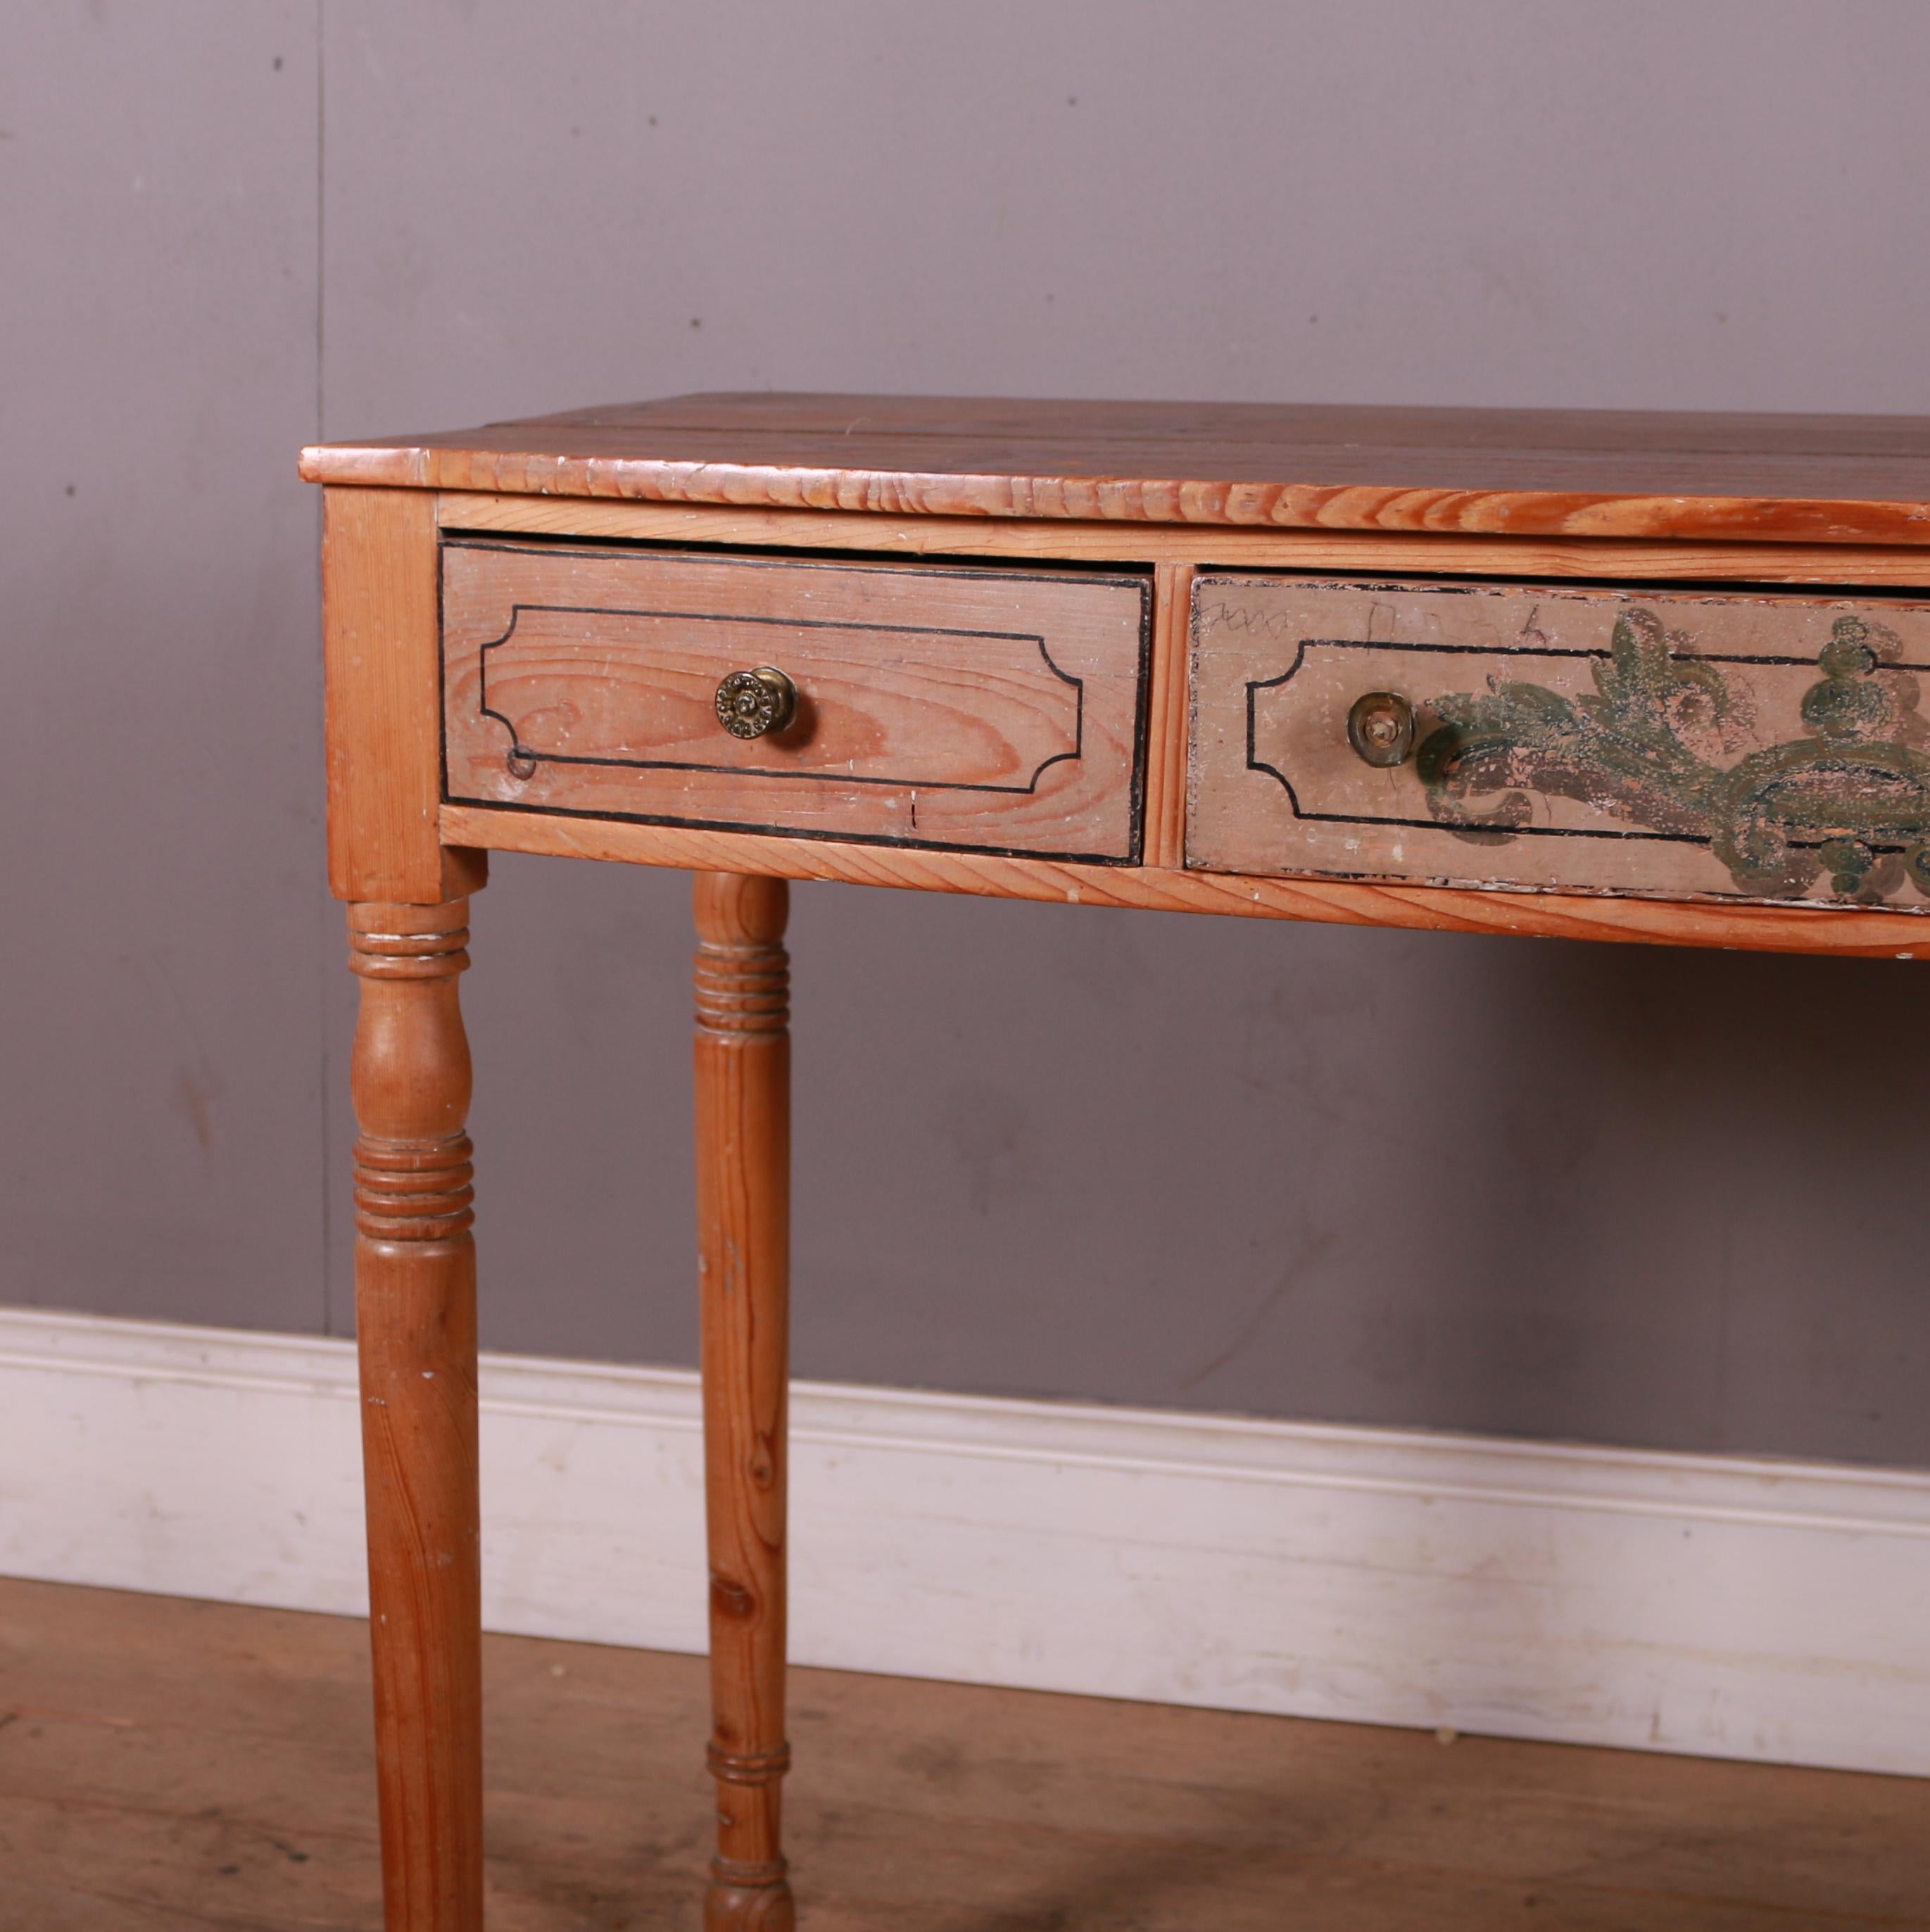 Table d'appoint / bureau en pin du début du 19e siècle avec des traces de peinture d'origine. 1820.

Le dégagement est de 24,5